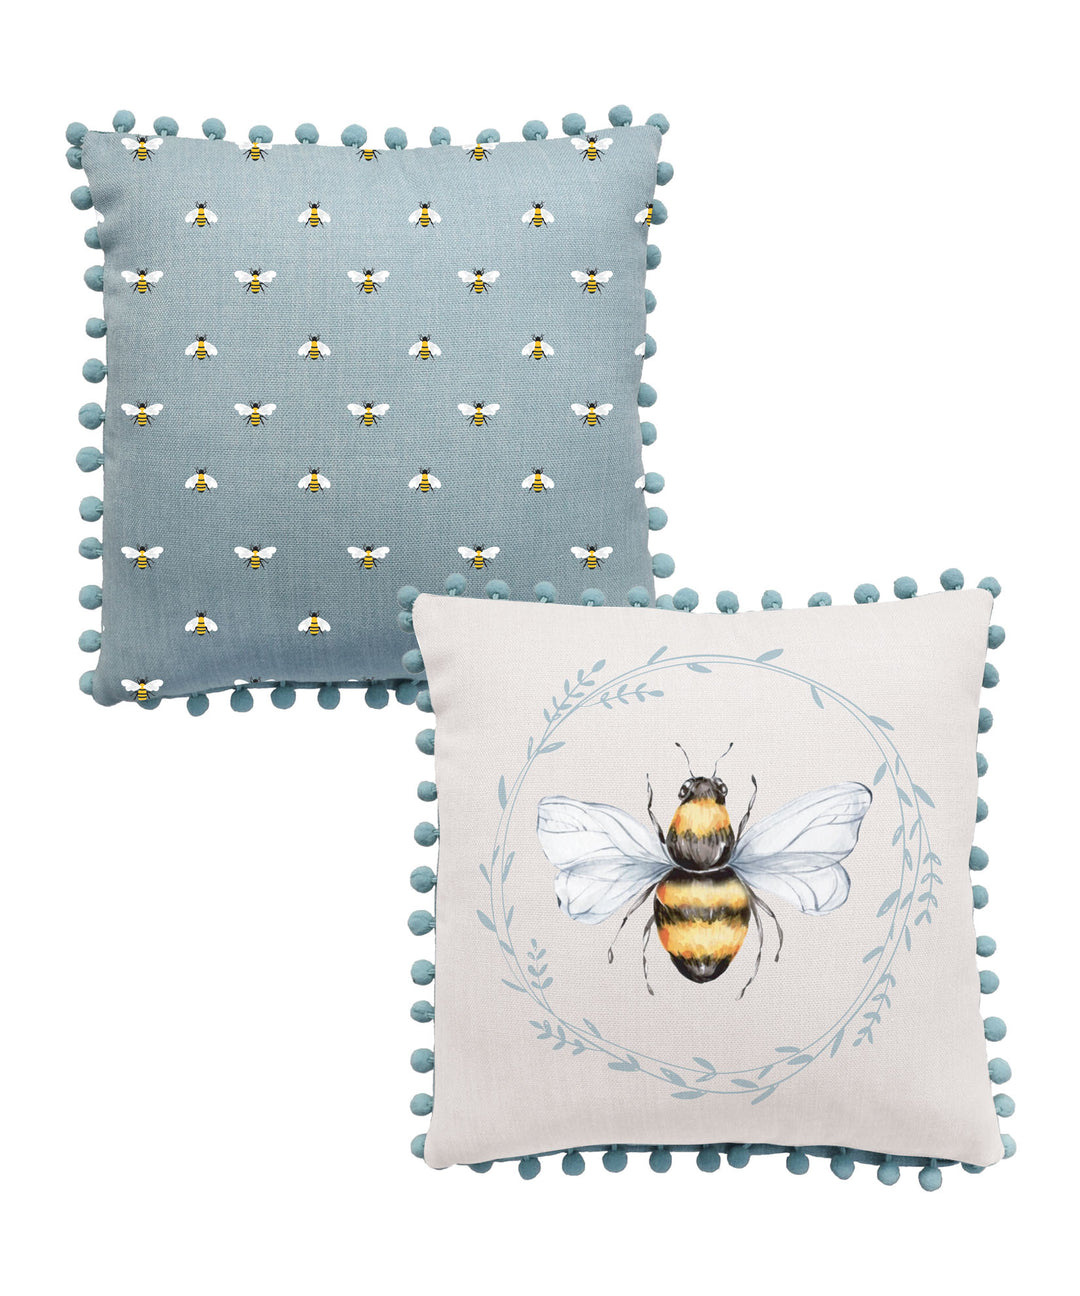 Blue Bee Pillow